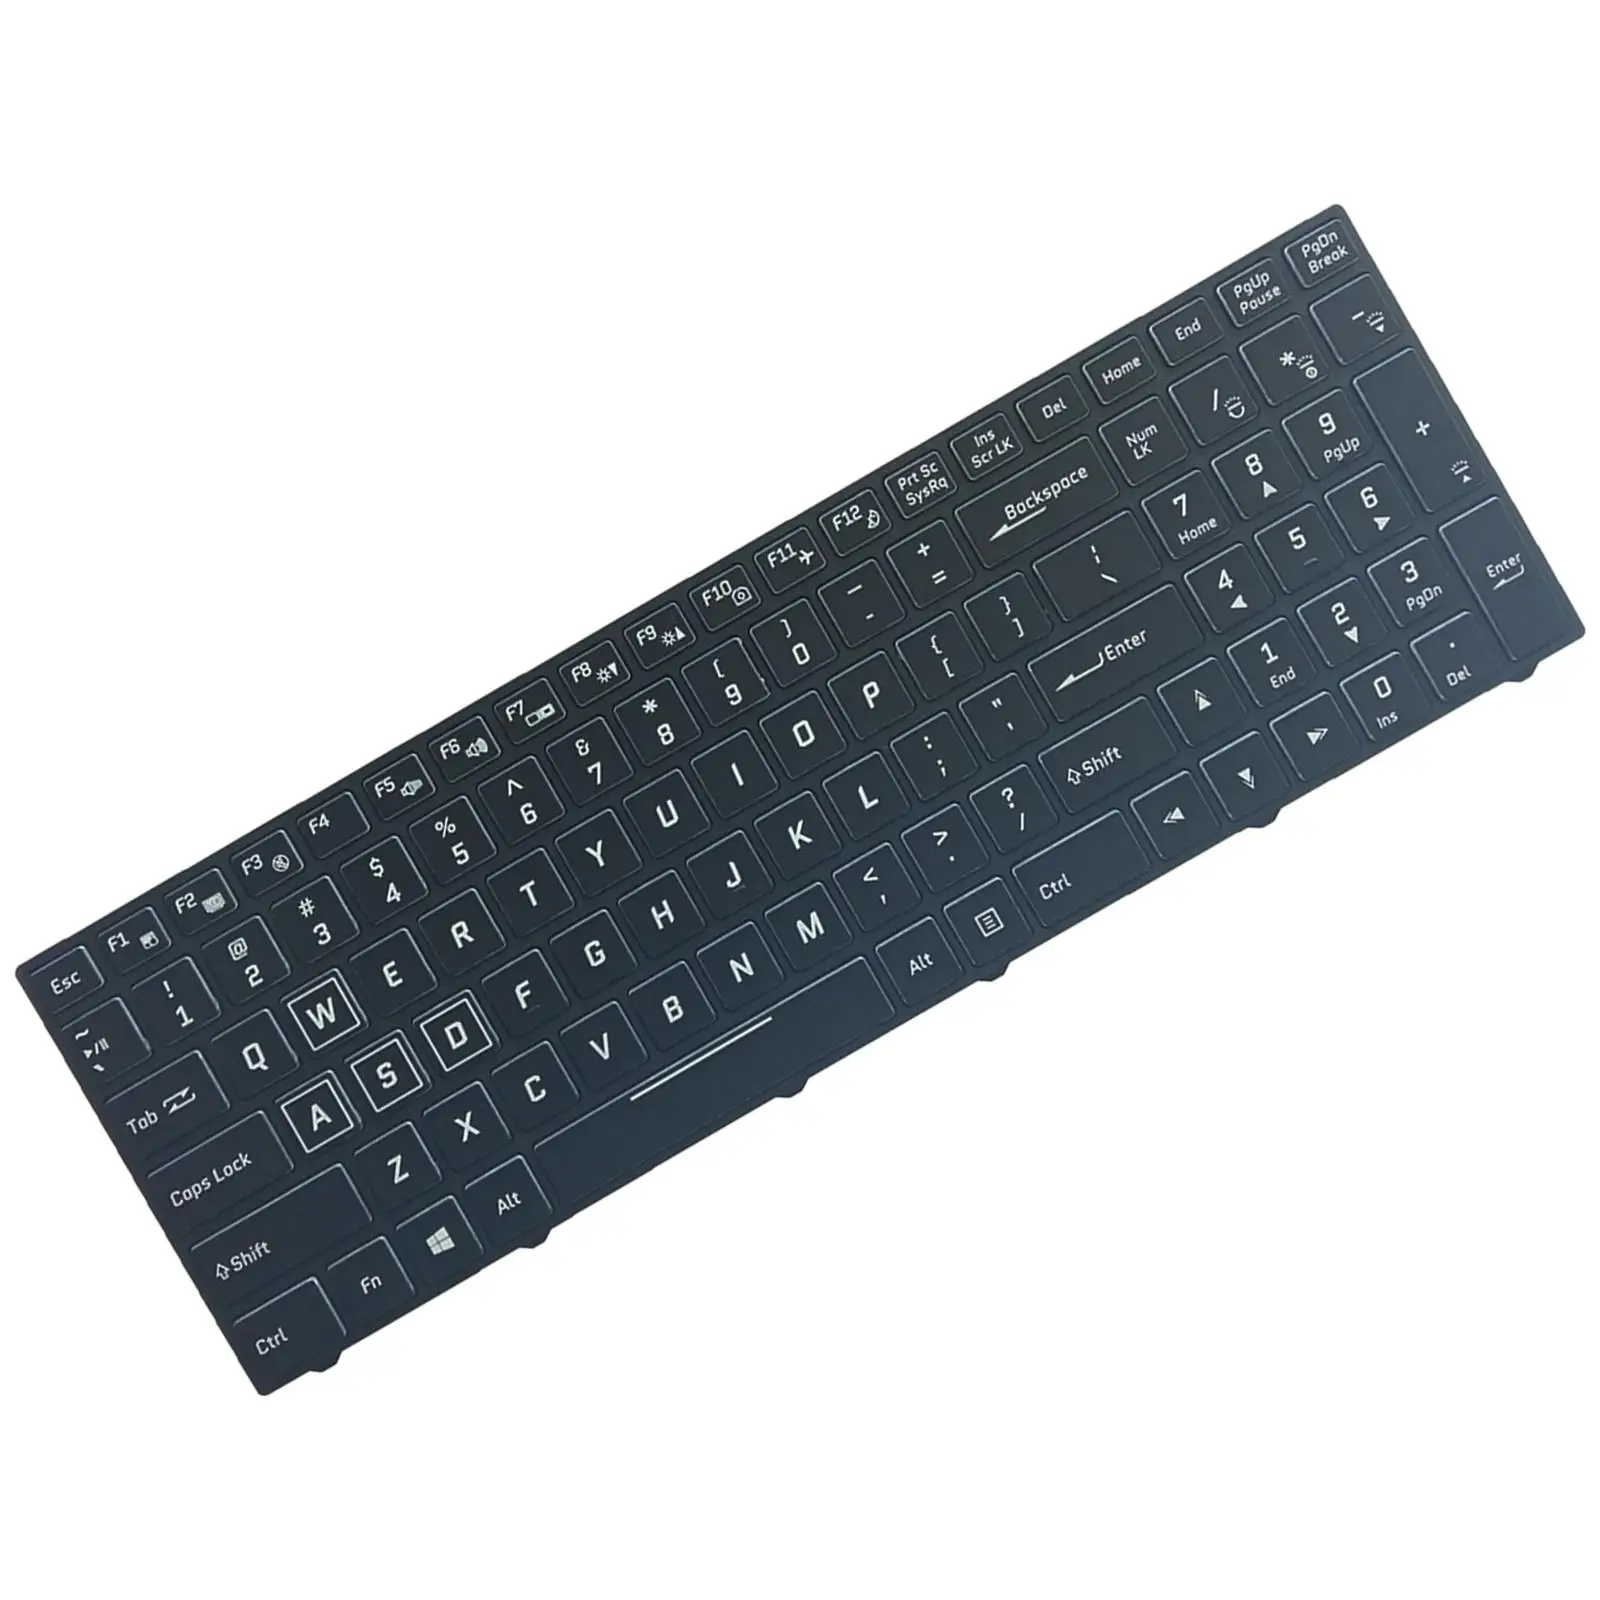 Laptop Keyboard, US Layout English RGB Backlit for Clevo N850 N950 N857HK Cvm15F23Usj430B 6-80-N85H0-011-1